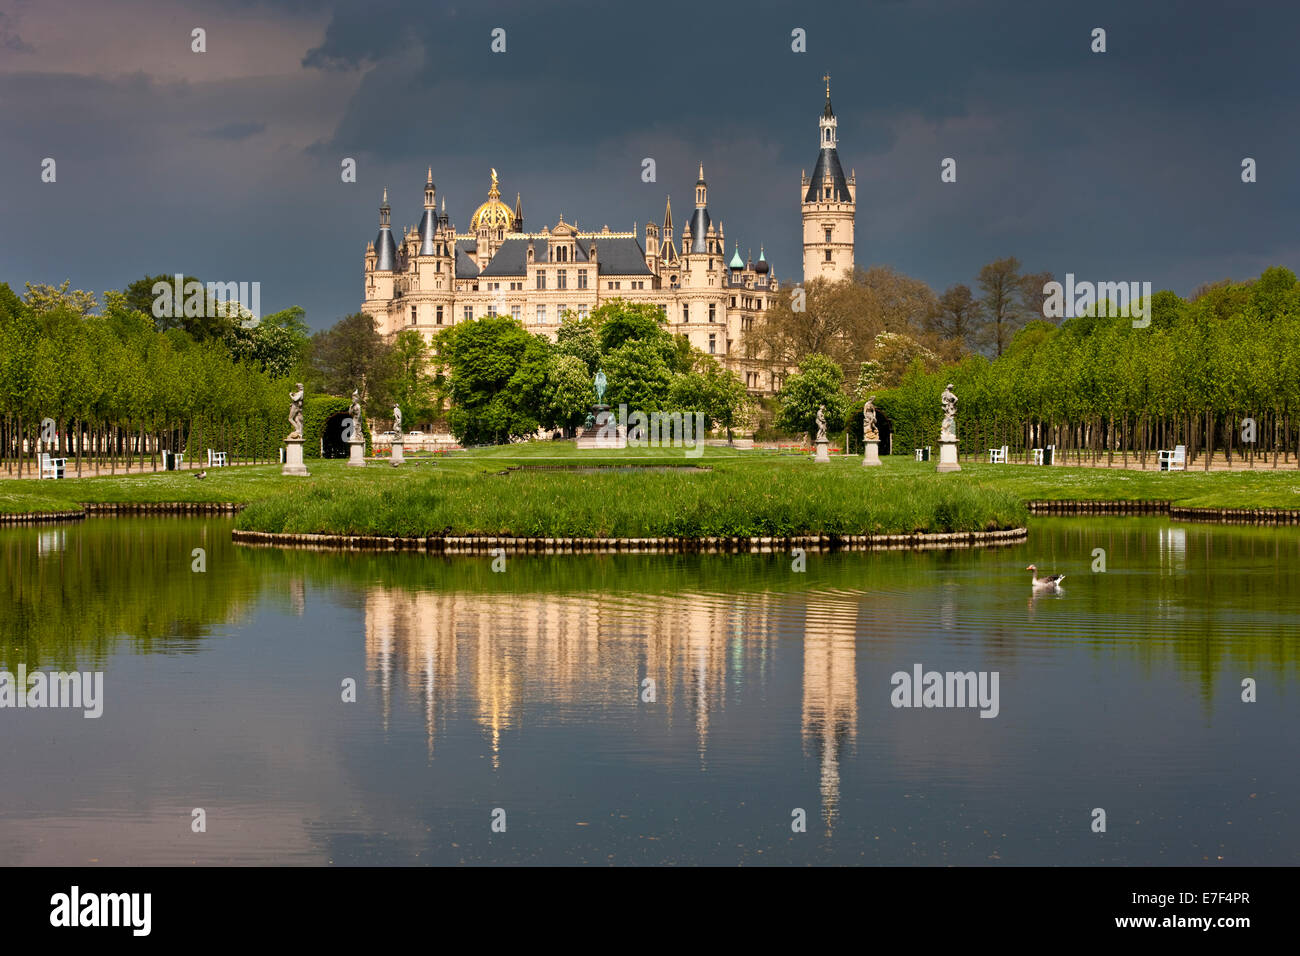 Le château de Schwerin, l'humeur orageuse, Schwerin, Mecklembourg-Poméranie-Occidentale, Allemagne Banque D'Images